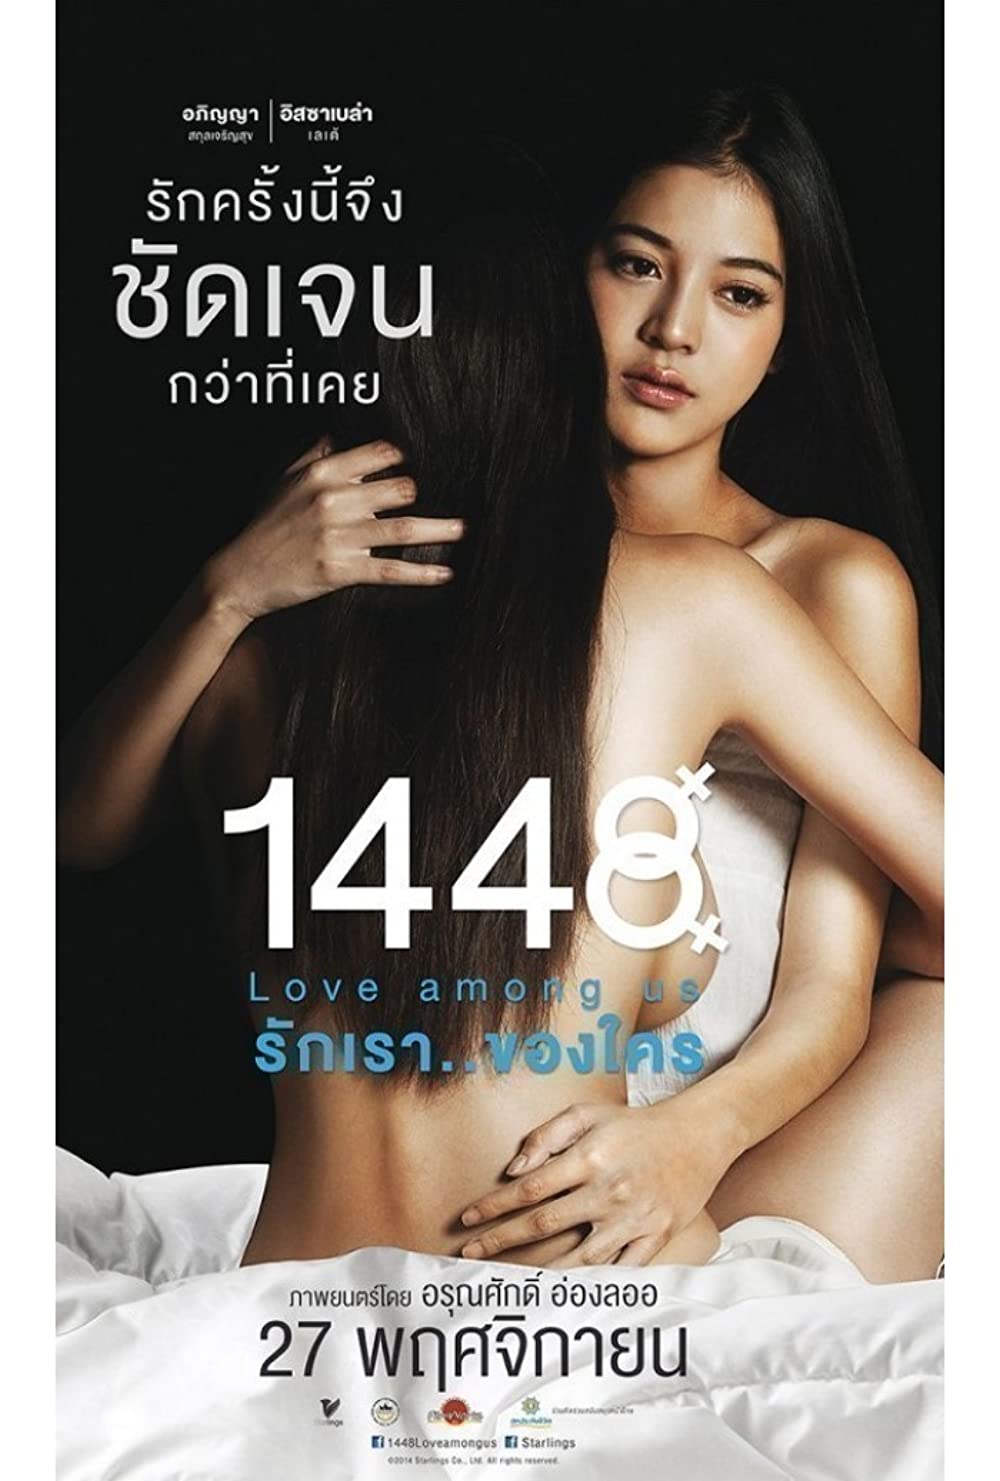 phim bách hợp Thái Lan